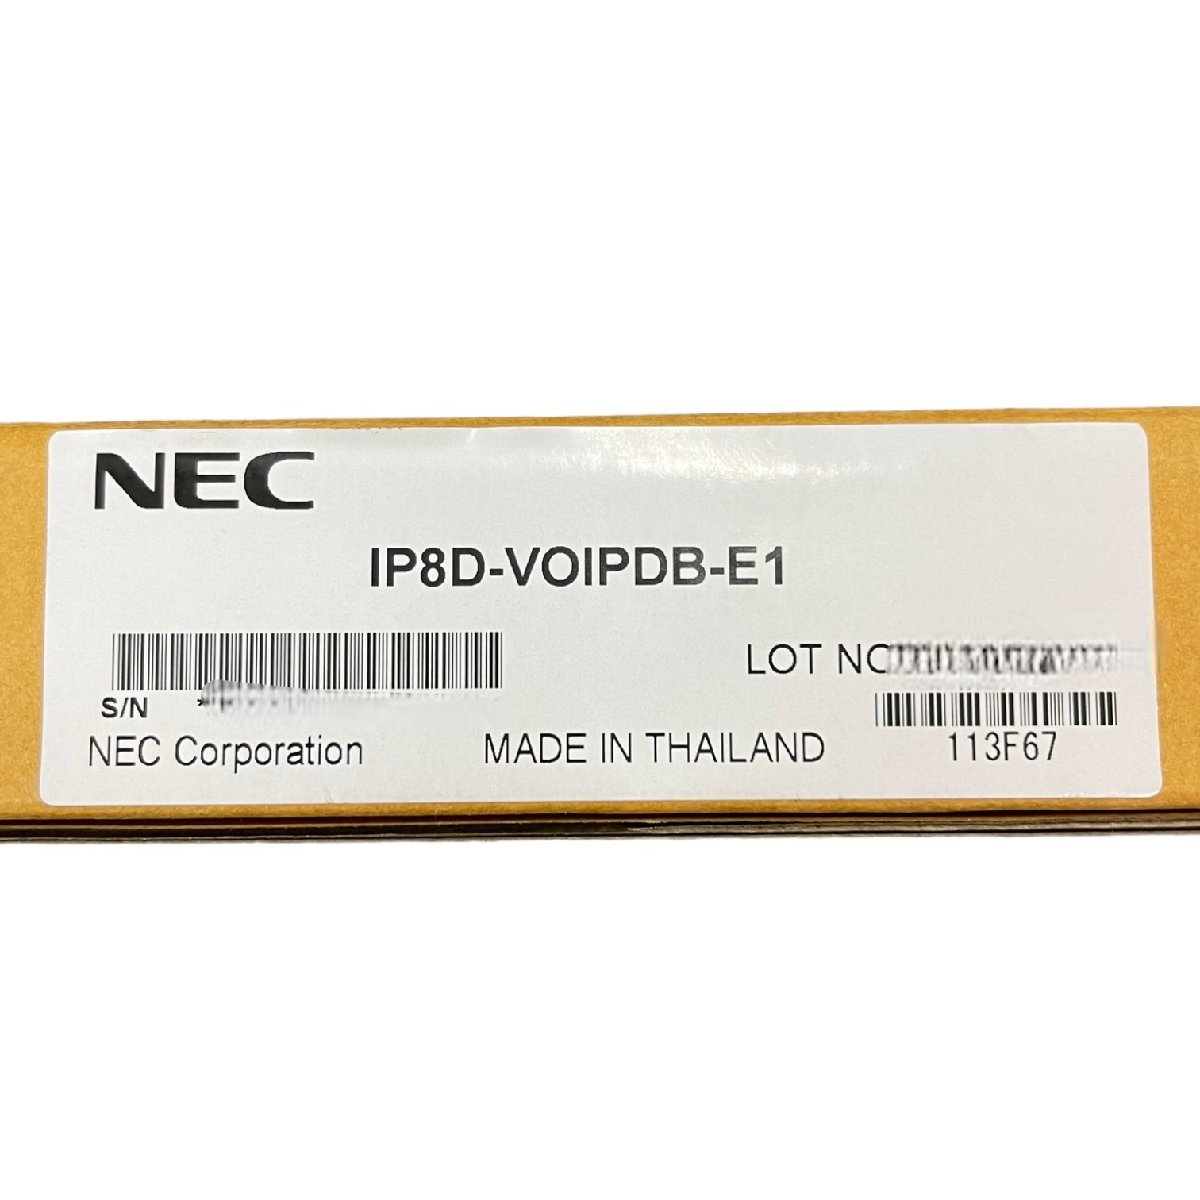 上品】 【未使用品】IP8D-VOIPDB-E1 NEC J45192RD 箱有 基盤 ビジネス